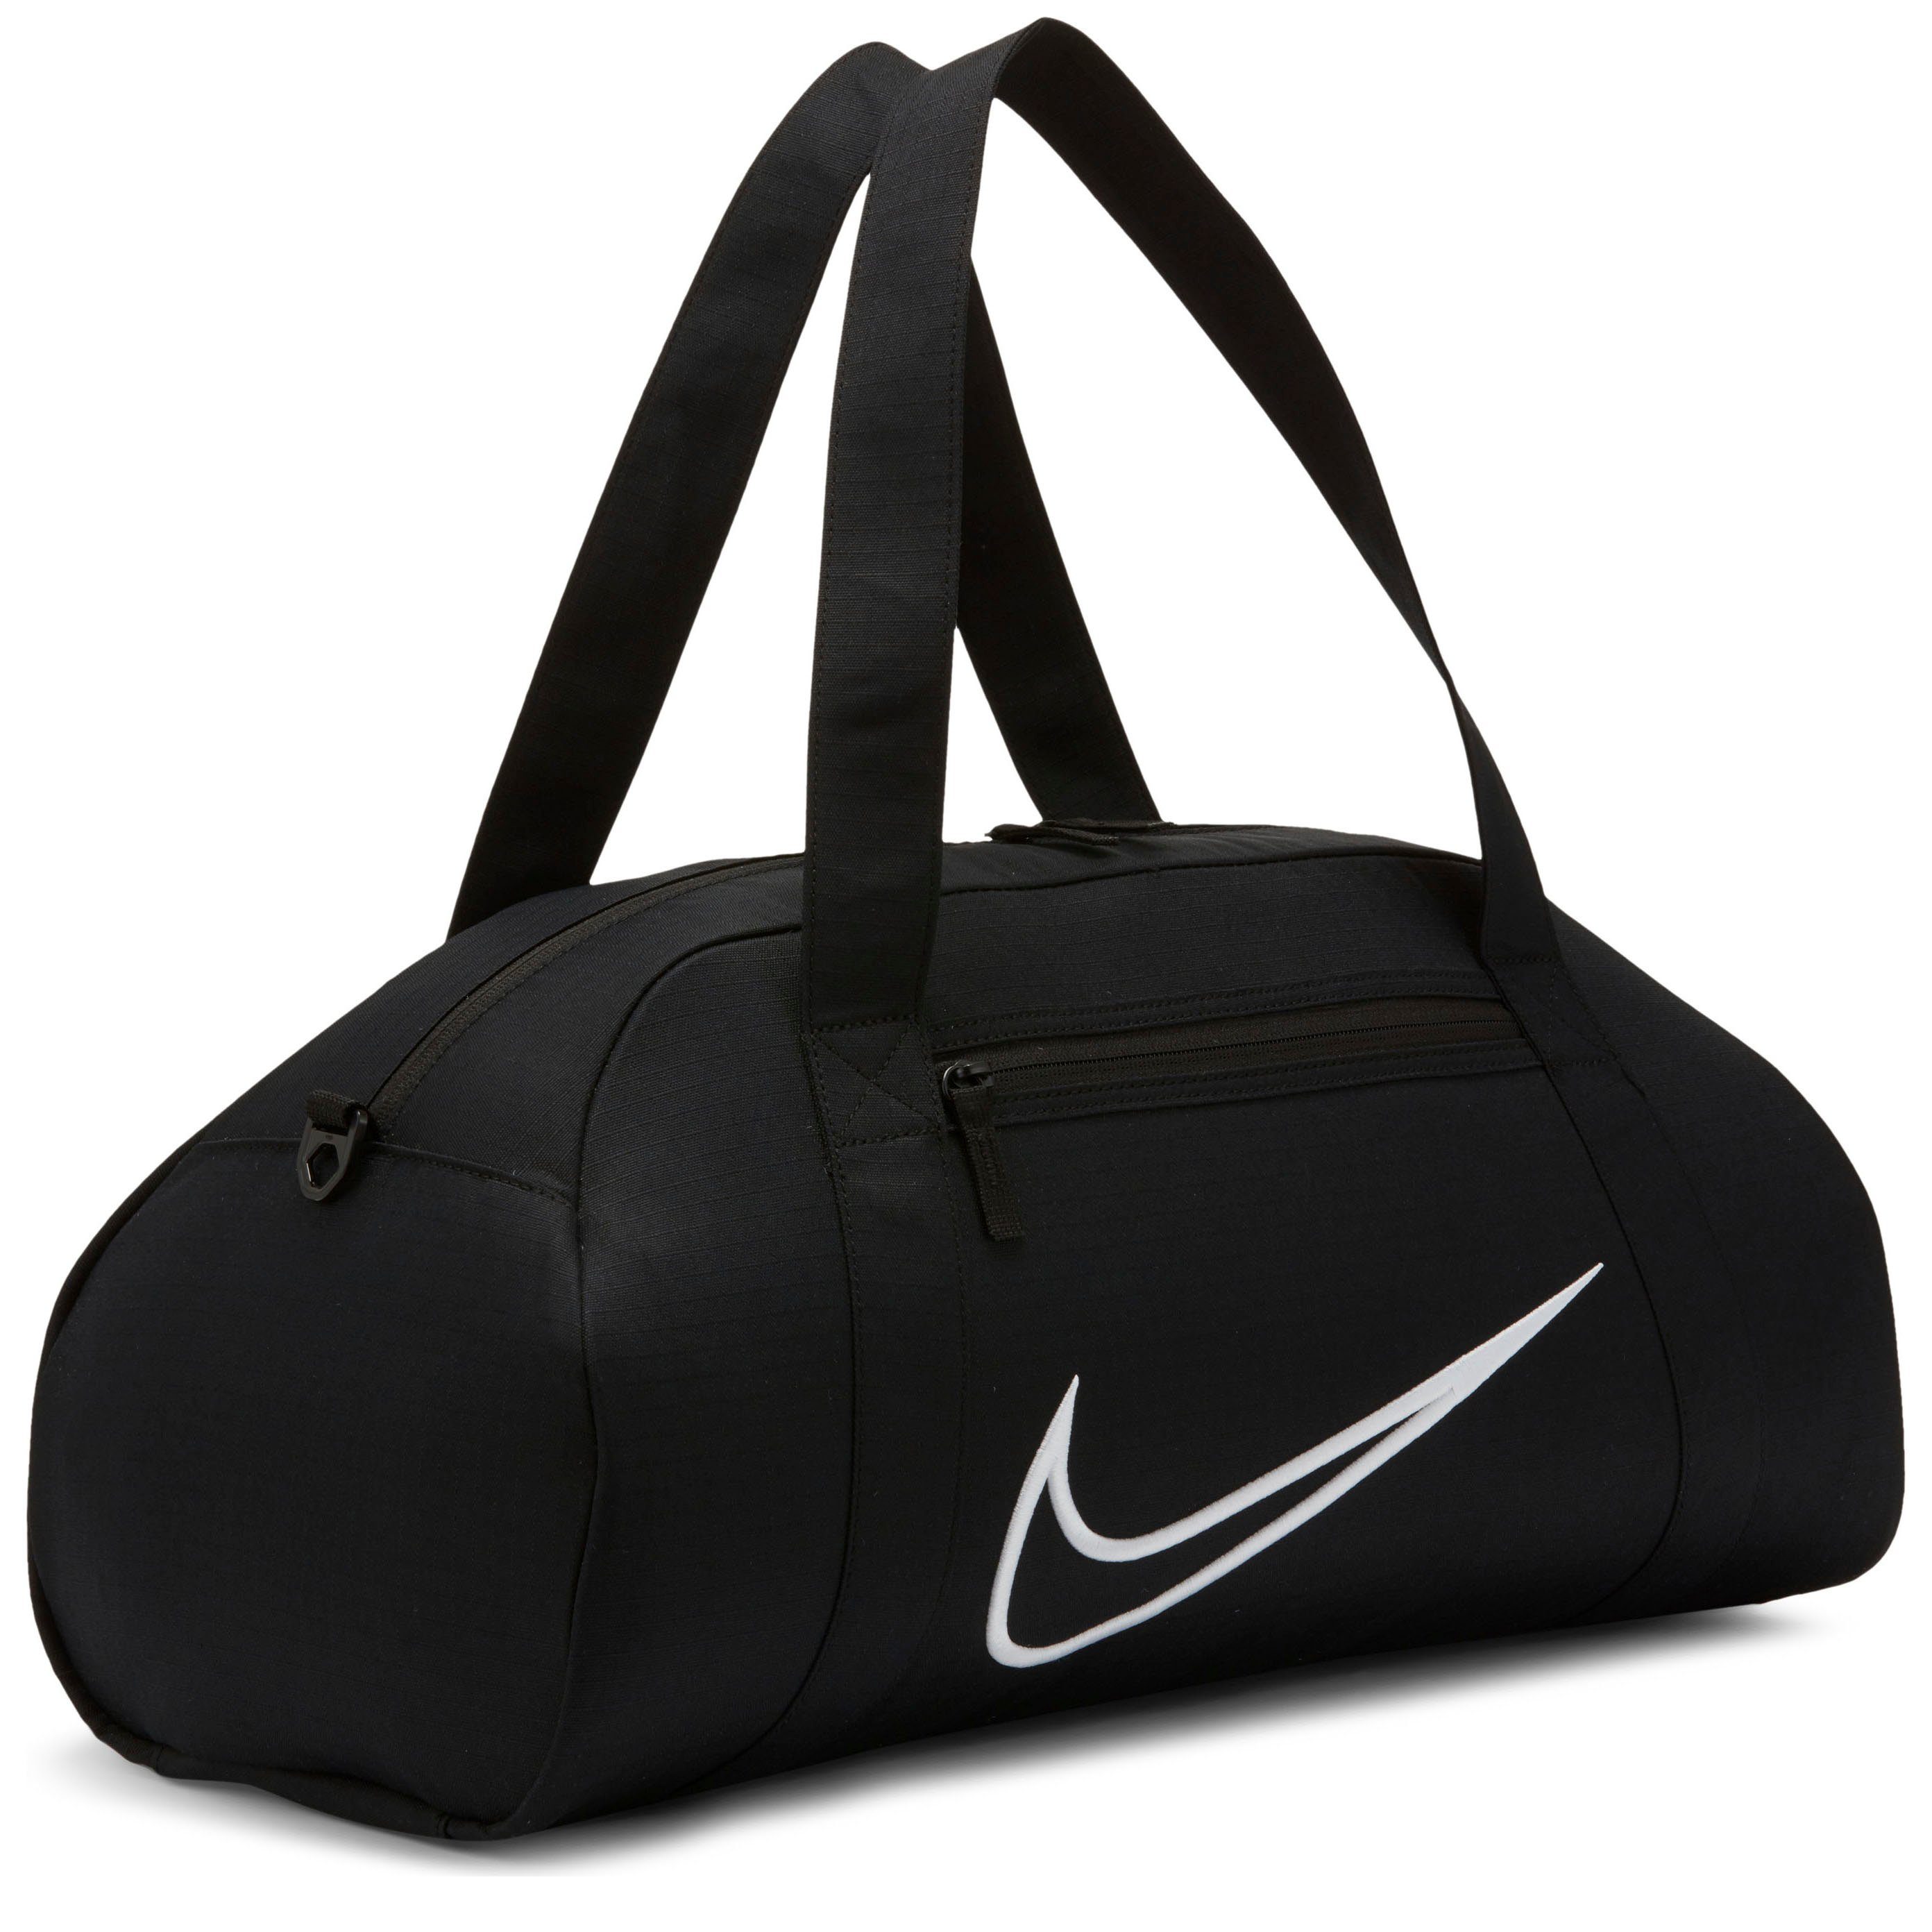 Nike Sporttaschen online kaufen » Nike Trainingstaschen | OTTO